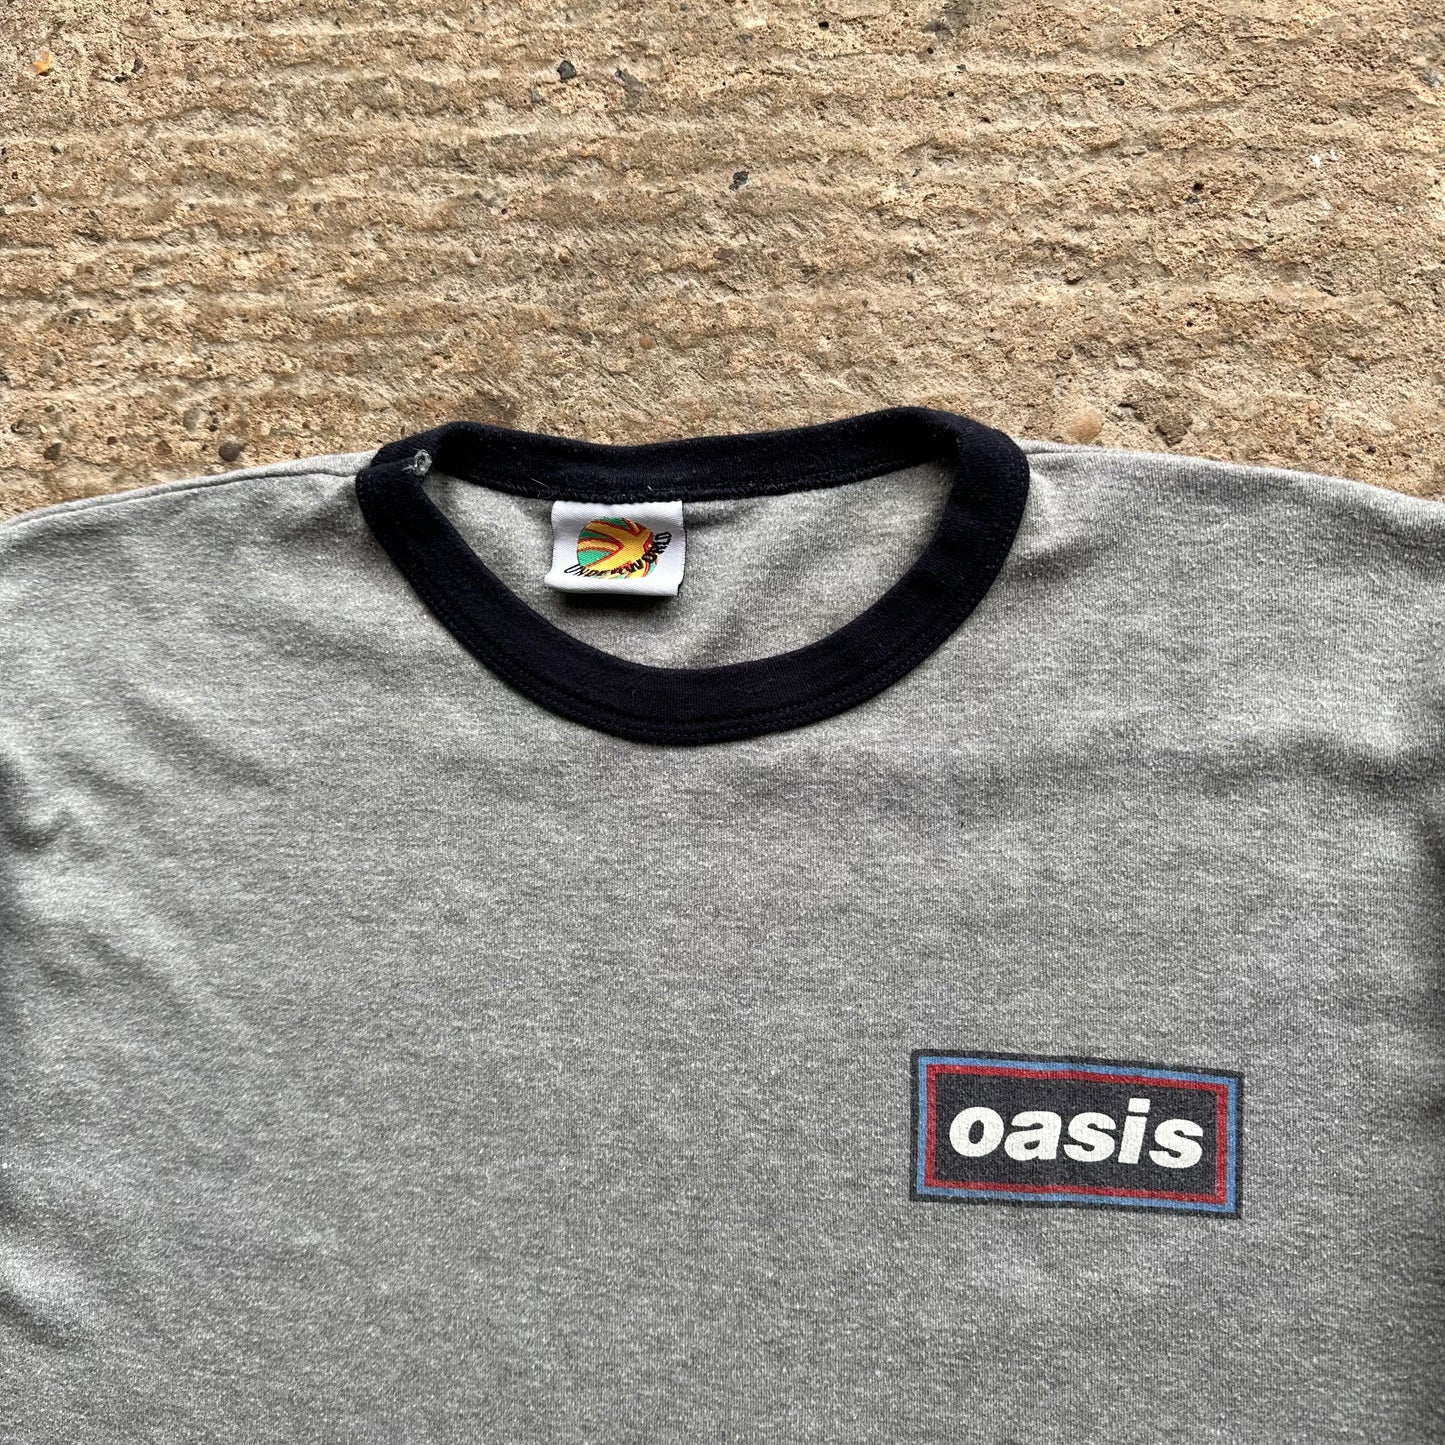 Oasis - 'Ringer' - 90's - S/M